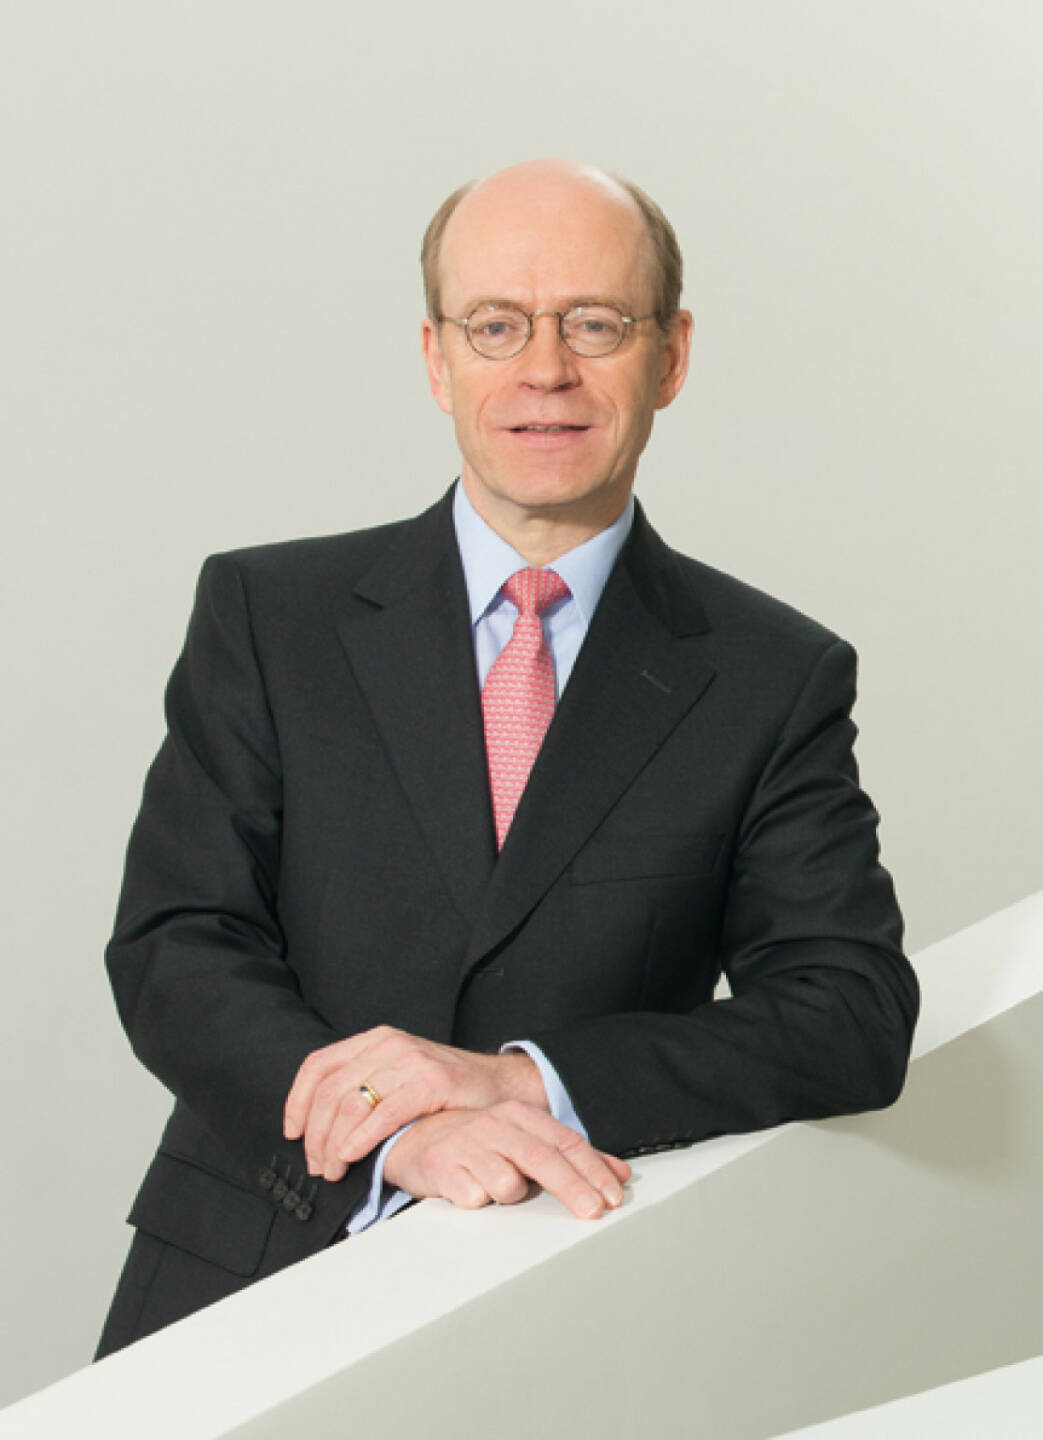 Nikolaus von Bomhard, Chairman of the Board of Management, Münchner Rückversicherung